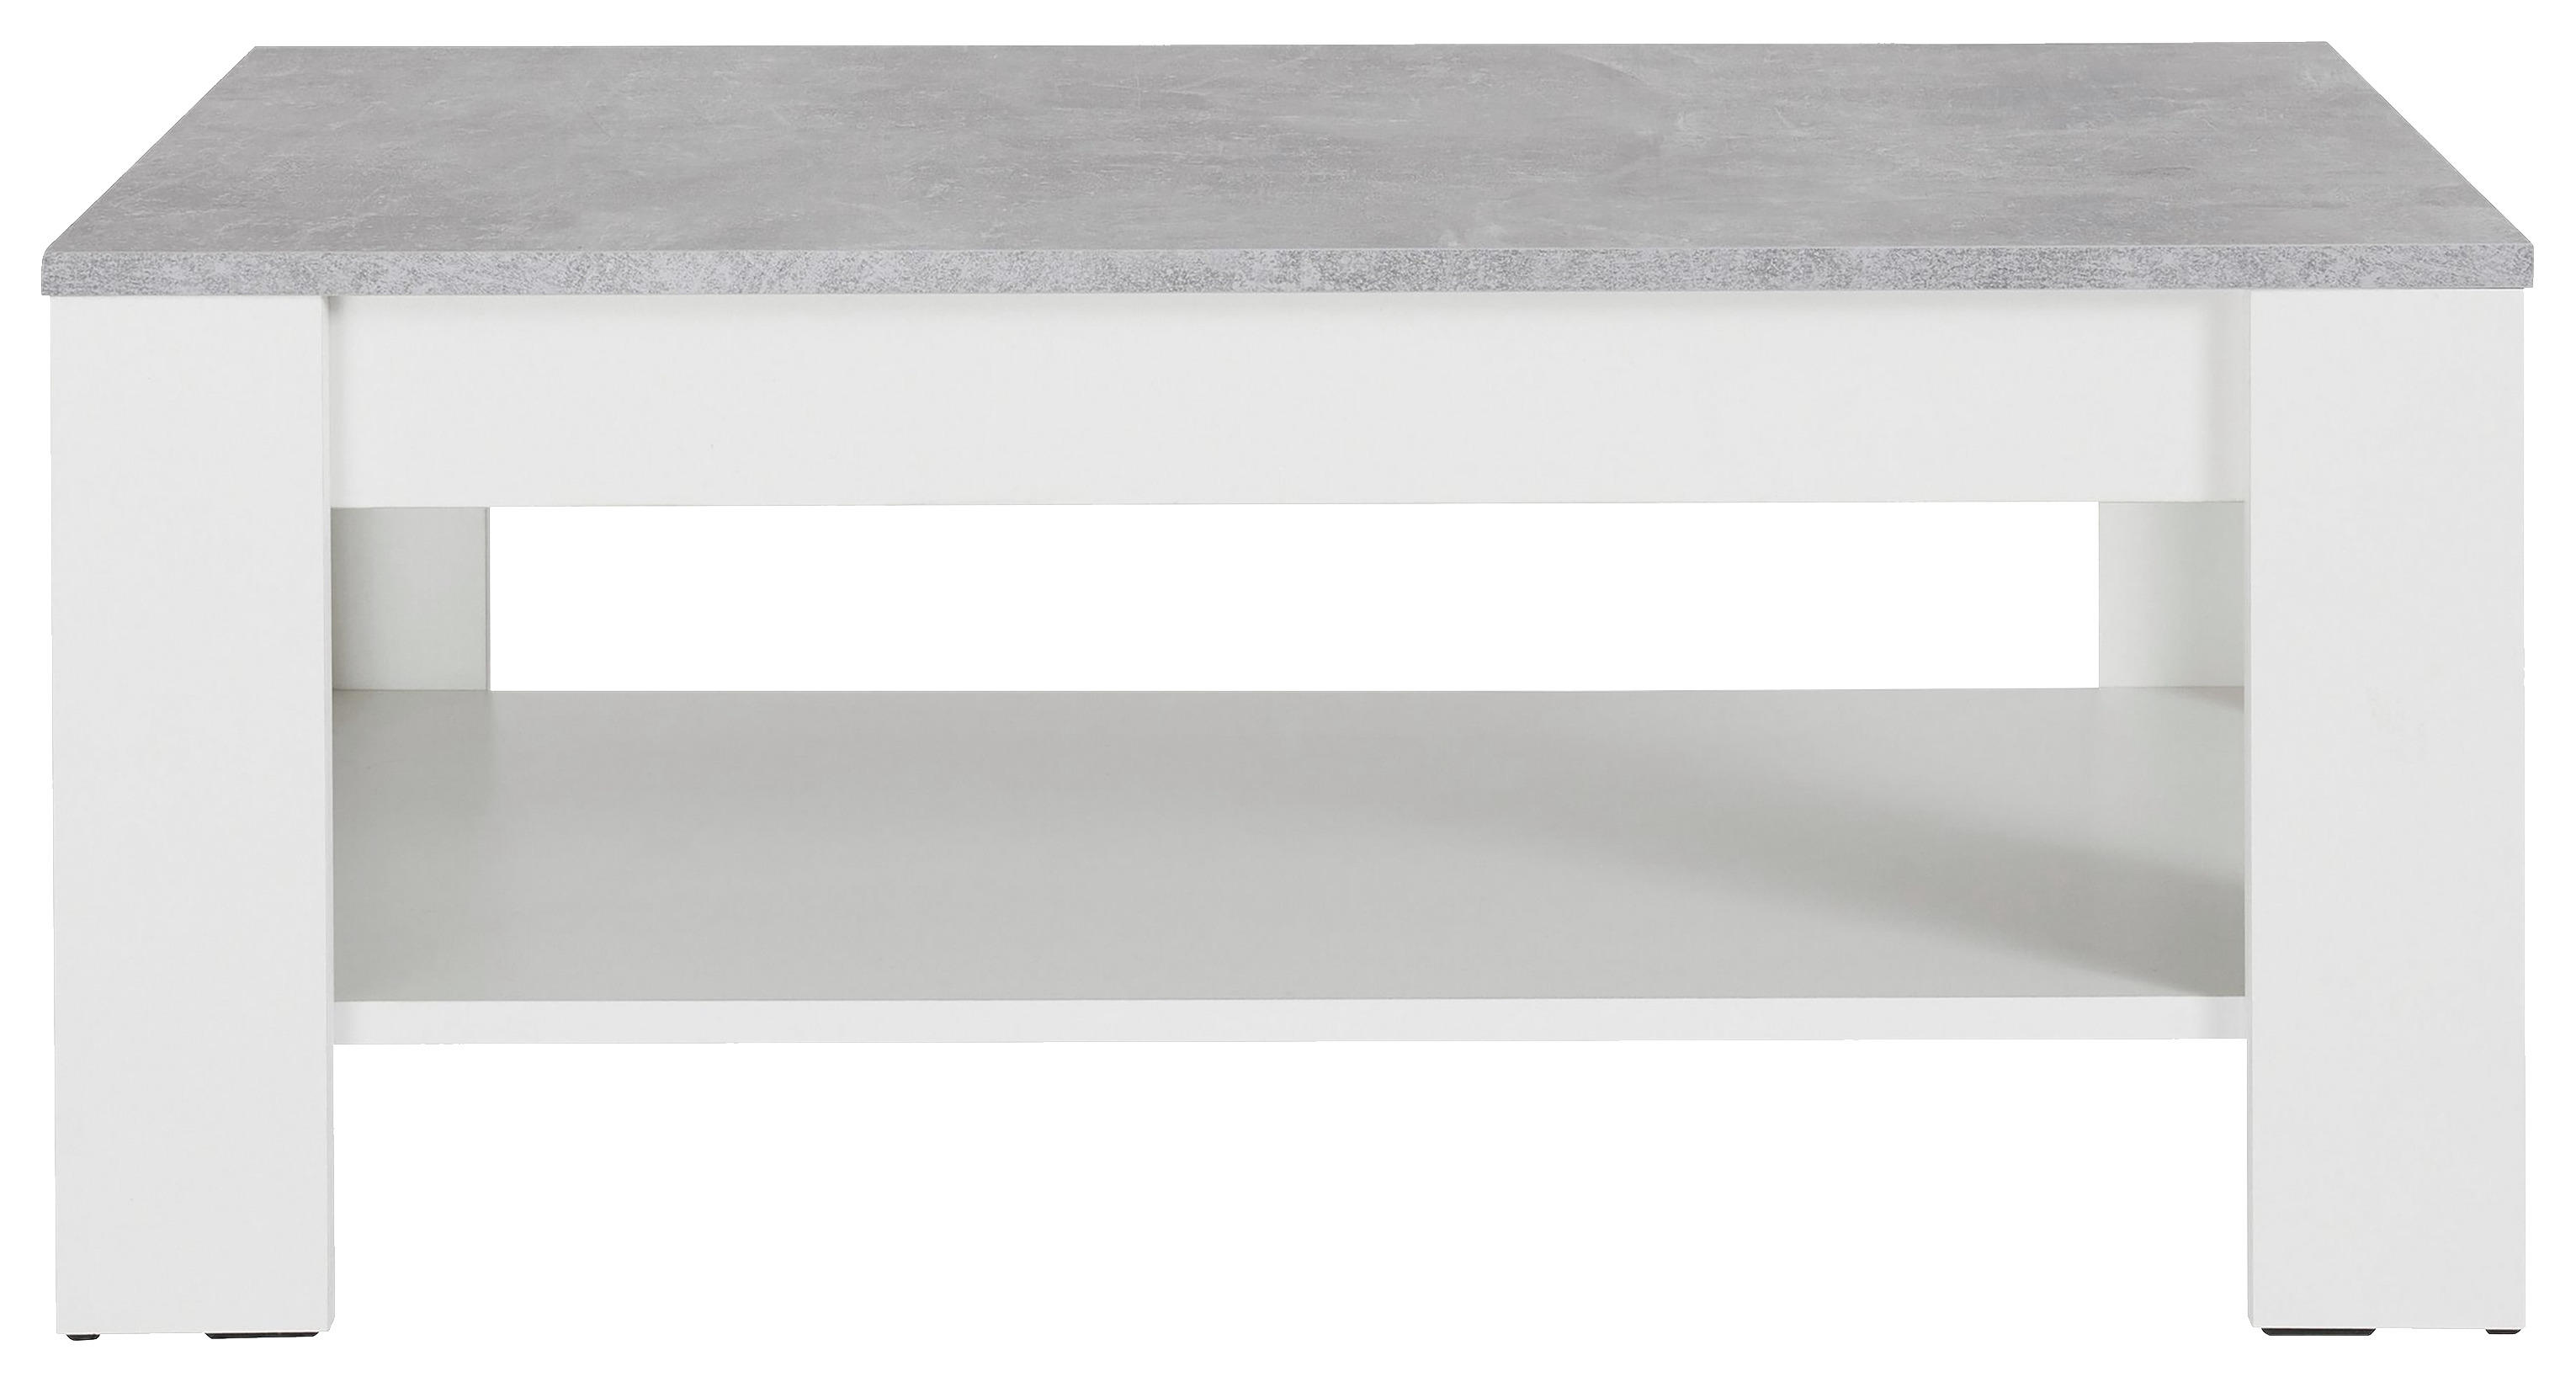 COUCHTISCH rechteckig Grau, Weiß  - Weiß/Grau, KONVENTIONELL (100/60/44cm) - MID.YOU